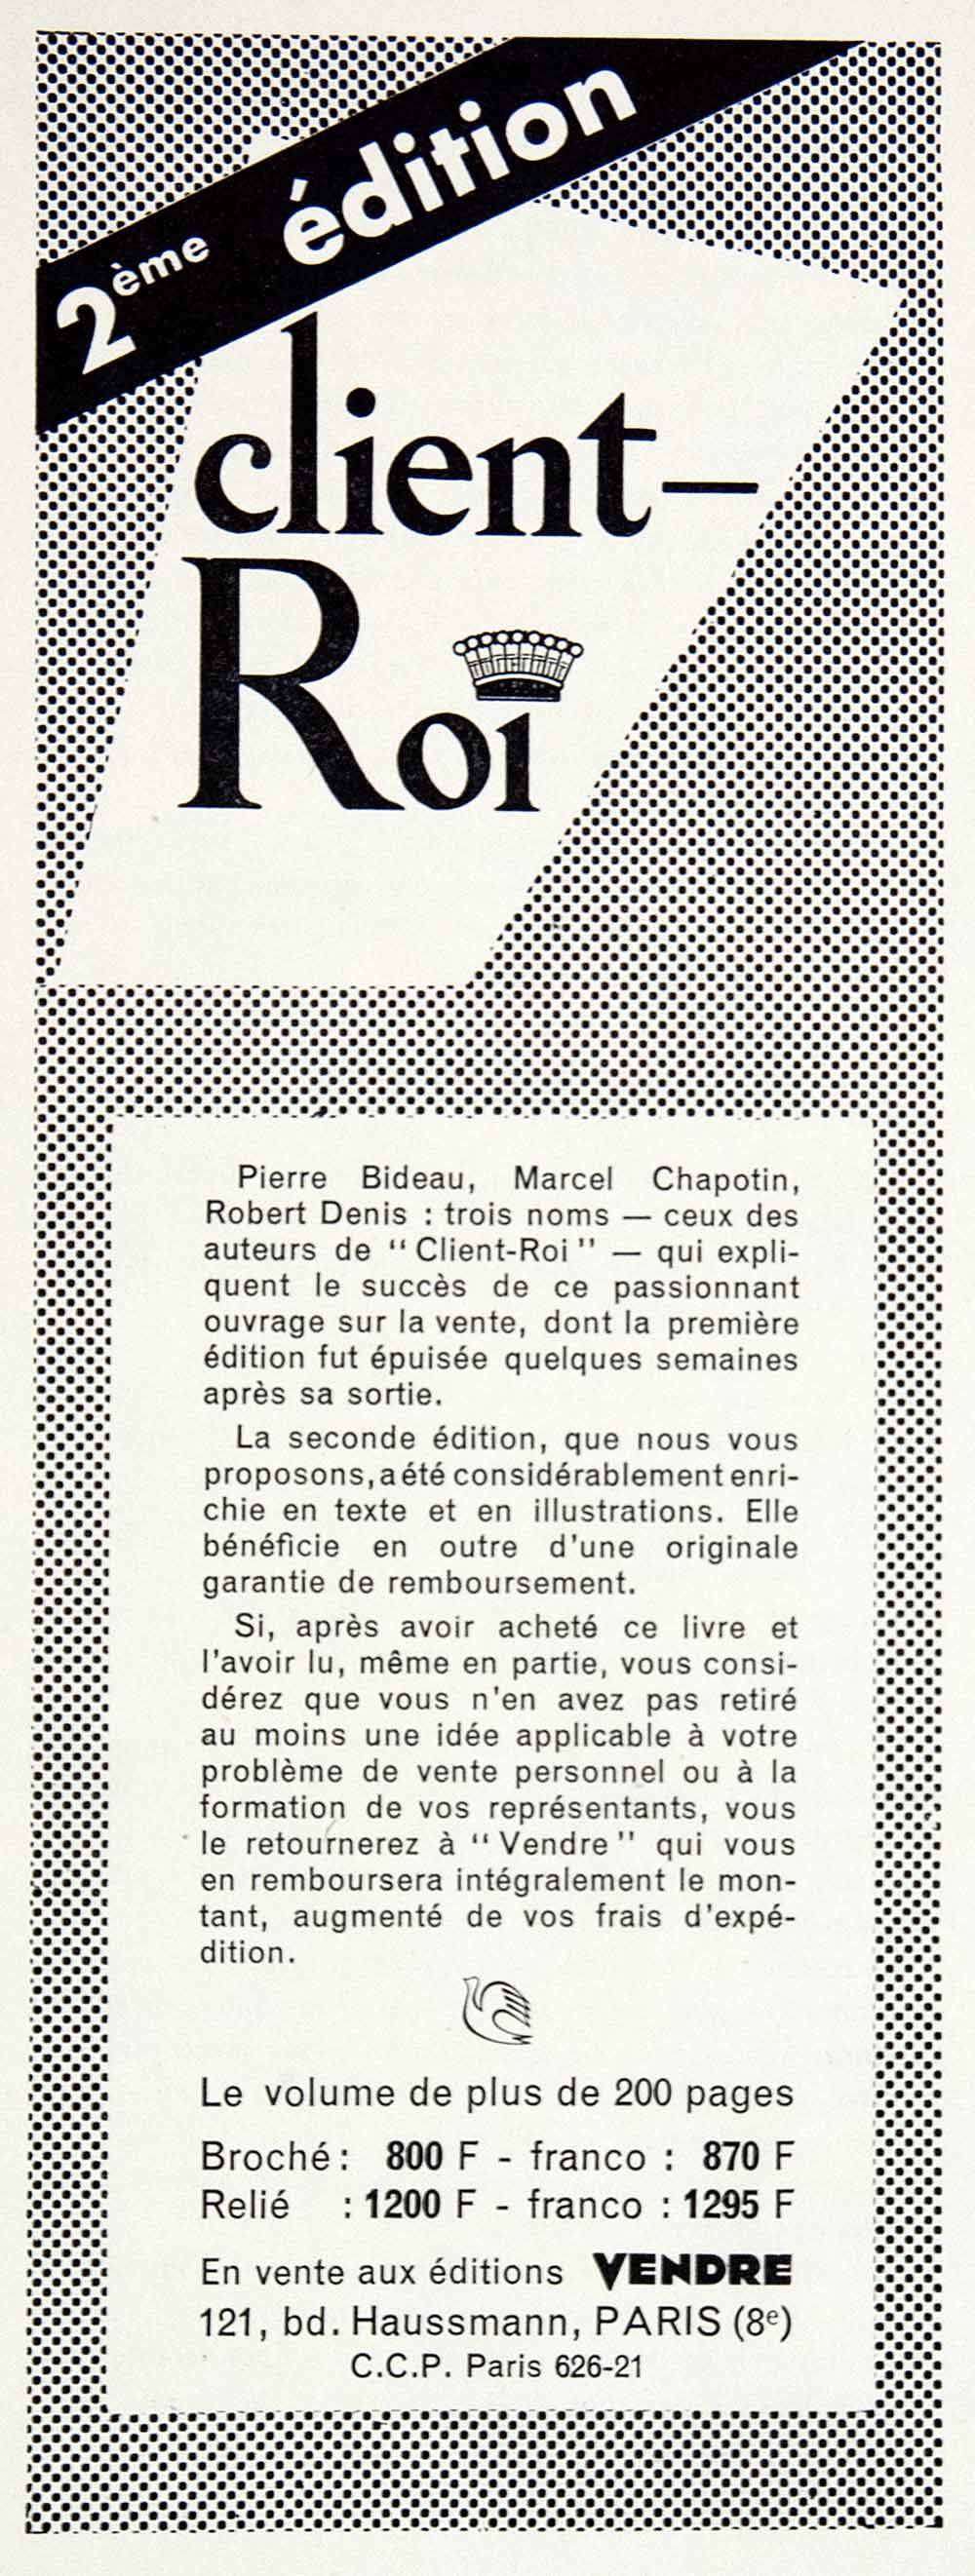 1957 Ad Client-Roi Pierre Bideau Marcel Chapotin Robert Denis Publication VEN7